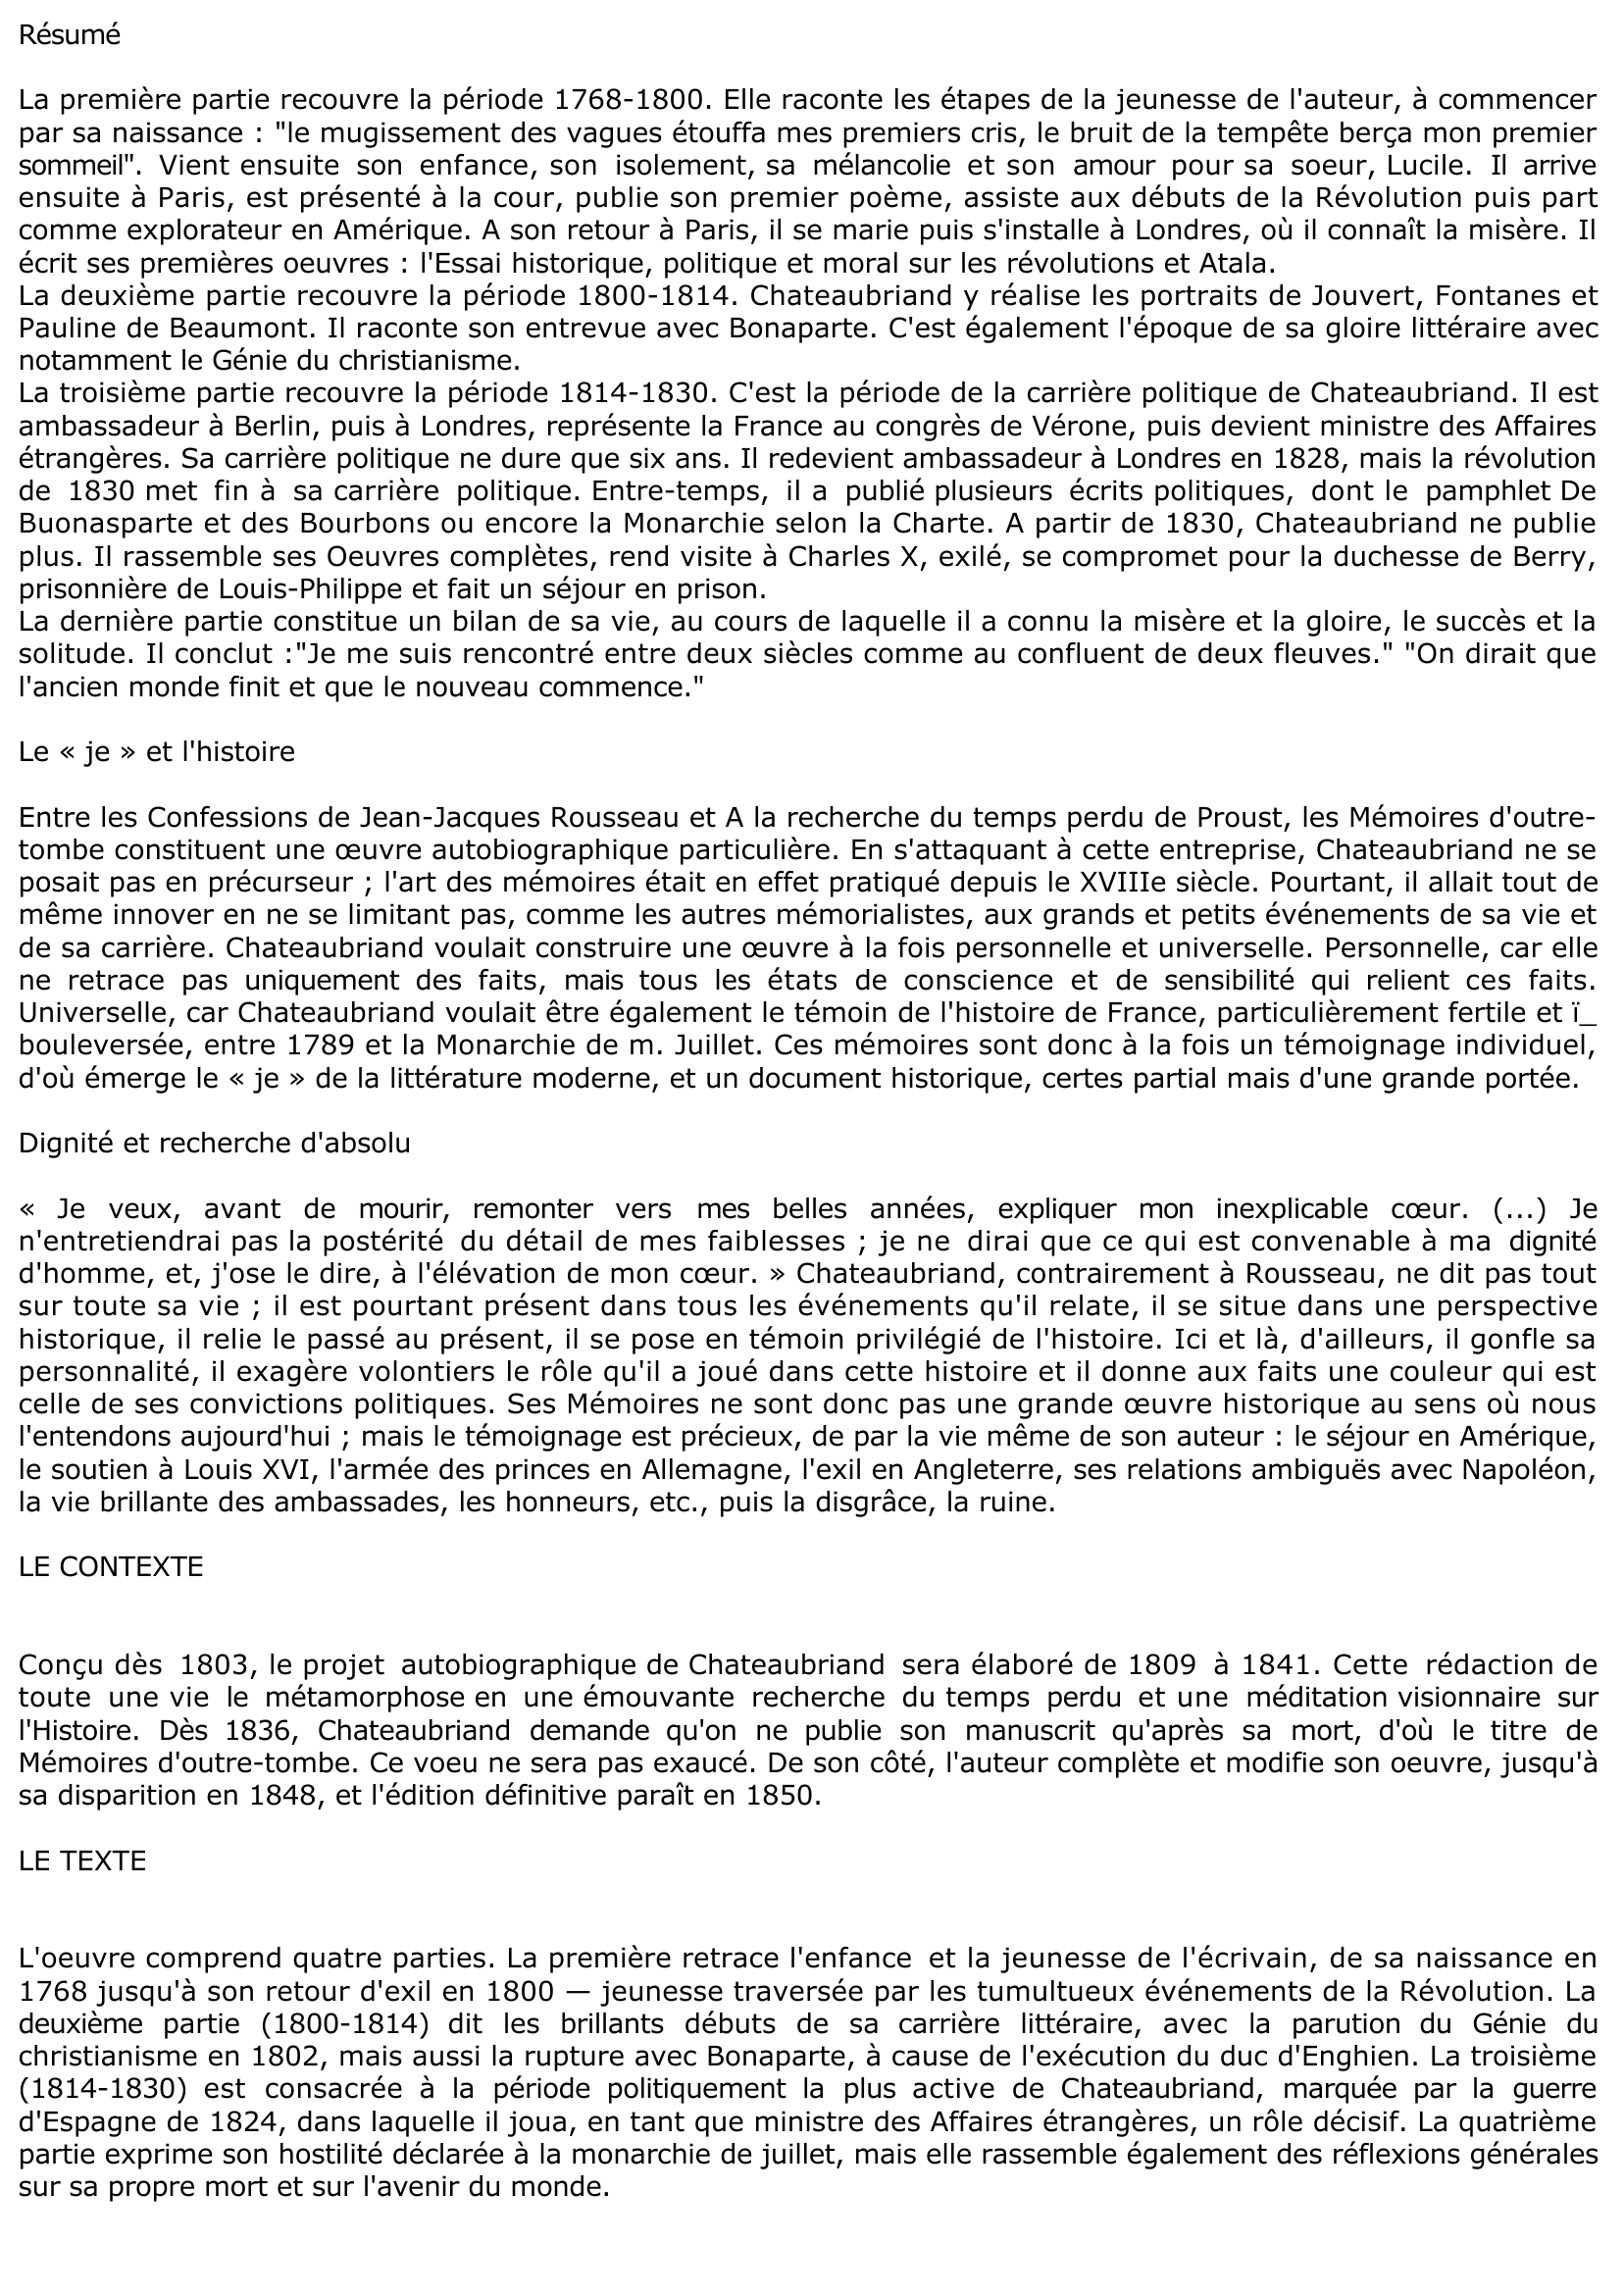 Prévisualisation du document Les « Mémoires d'outre-tombe » de Chateaubriand (fiche de lecture)